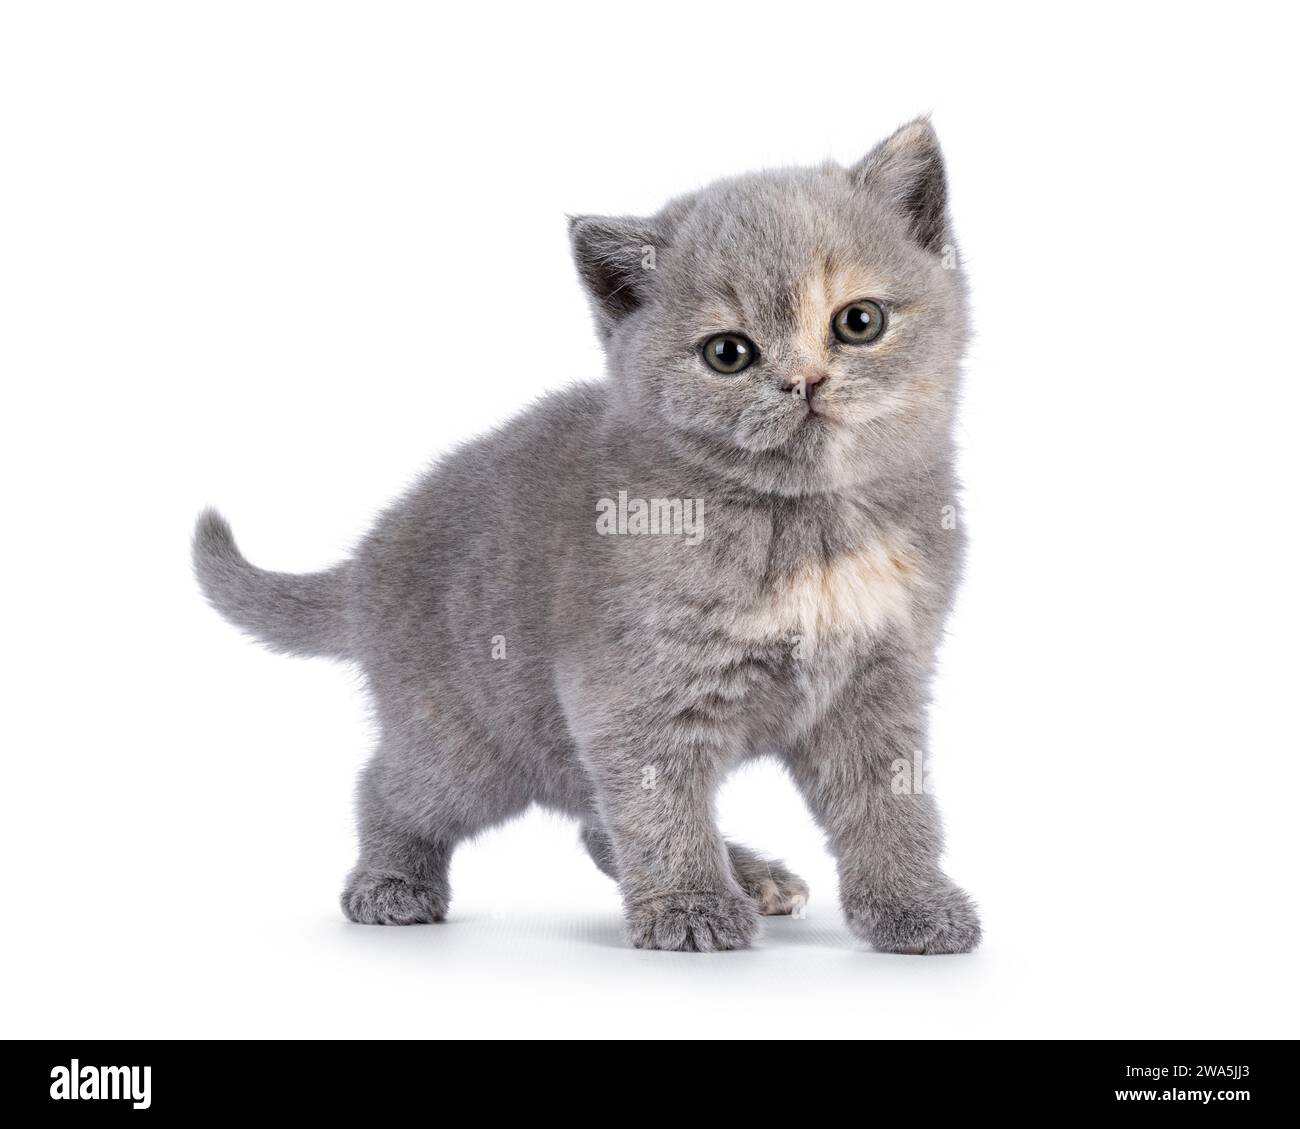 Süßes 6 Wochen altes britisches Kurzhaar-Katzenkätzchen, diagonal stehend. Blick direkt auf die Kamera. Isoliert auf weiß. Stockfoto